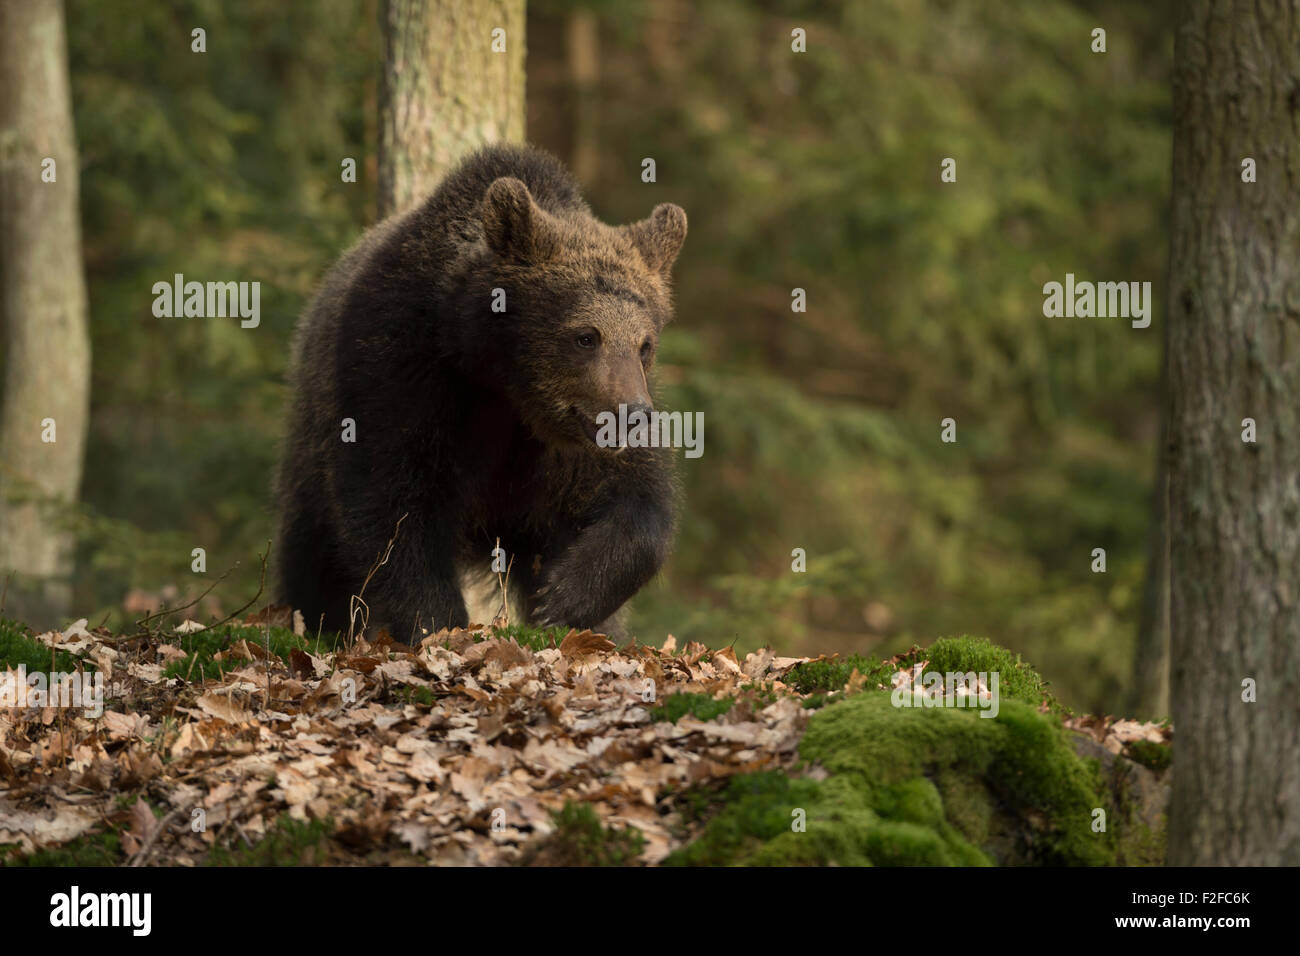 European Brown Bear / Europäischer Braunbär ( Ursus arctos ) walks, runs through a forest with withered foliage covered ground. Stock Photo